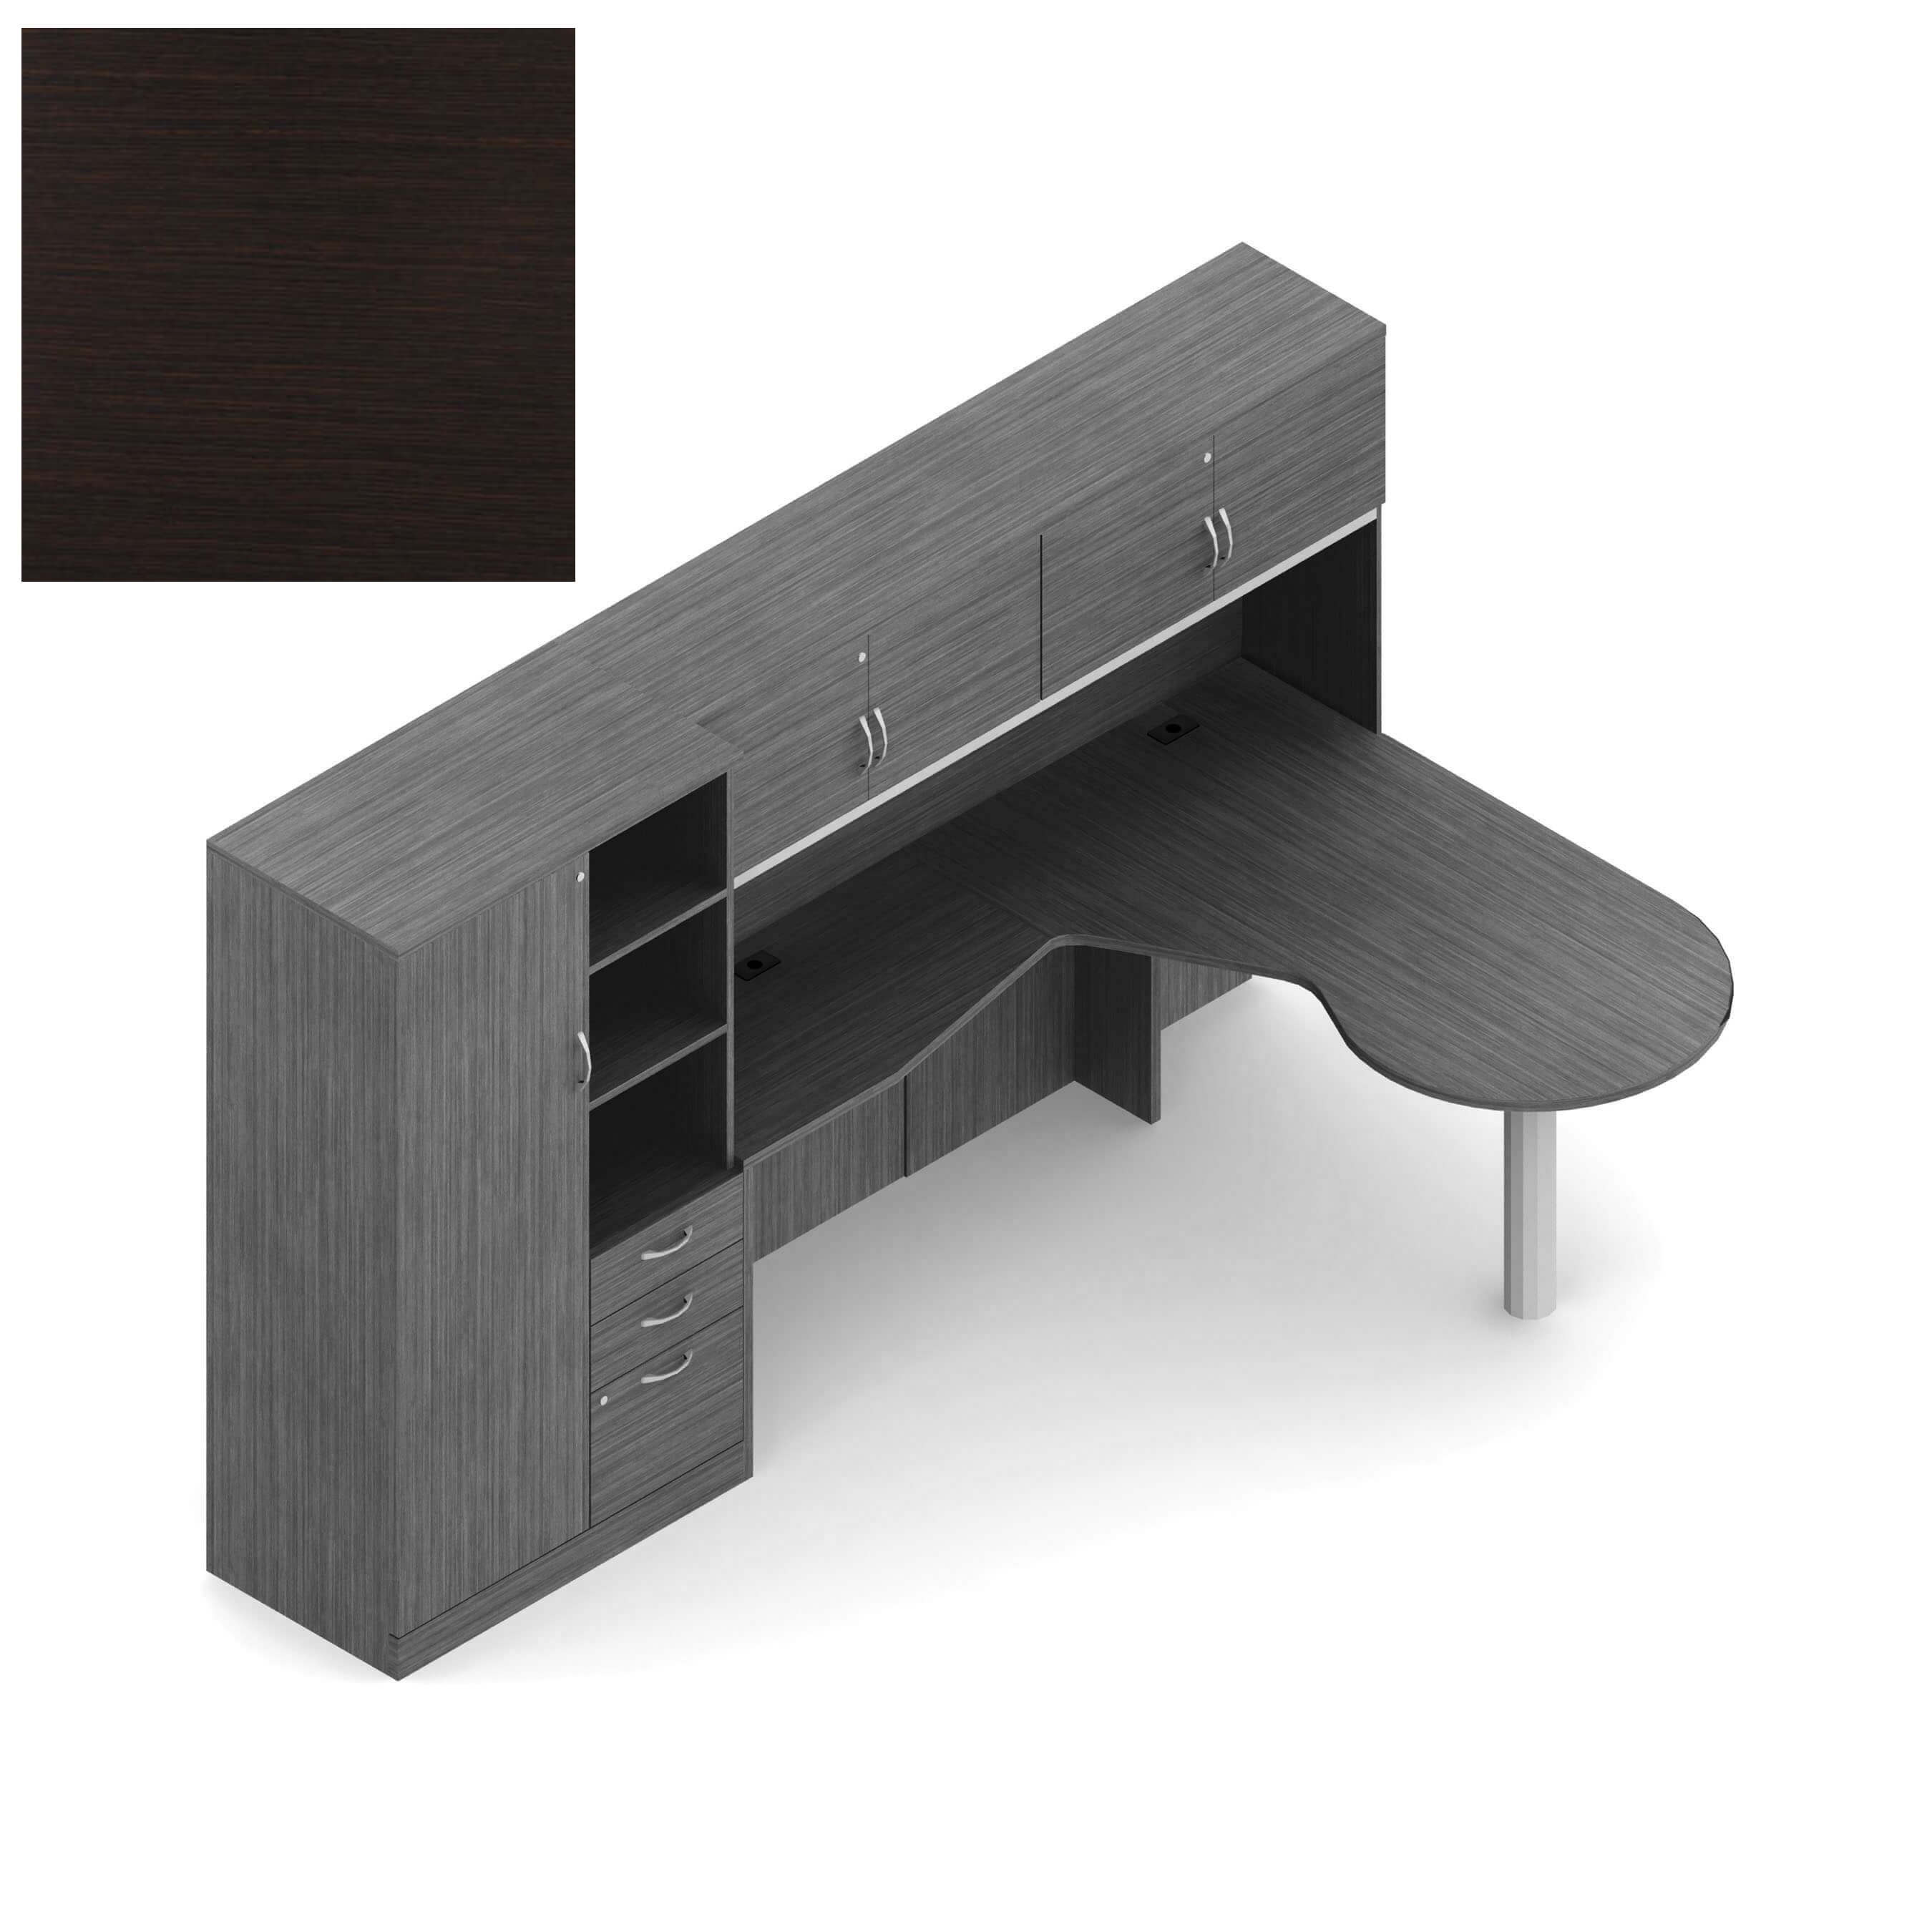 Global office furniture desks CUB ZRA507 DES R OLG